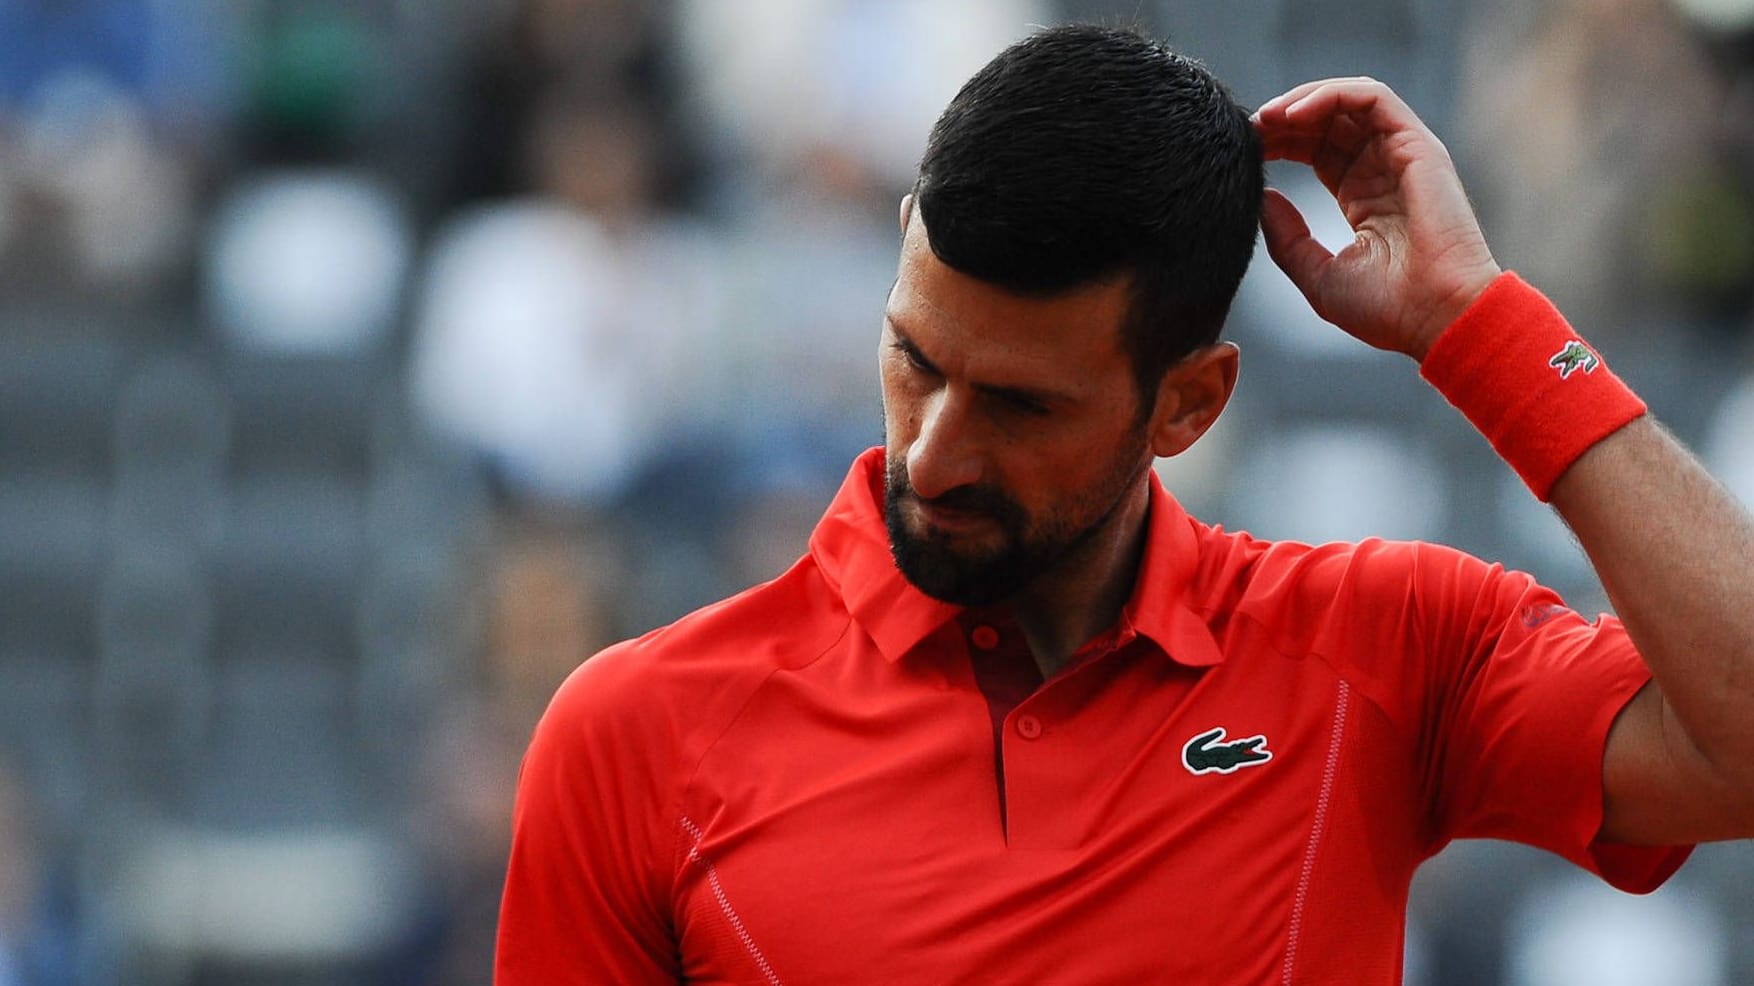 Tennis-Masters in Rom: Novak Djokovic geht nach Flaschenwurf zu Boden